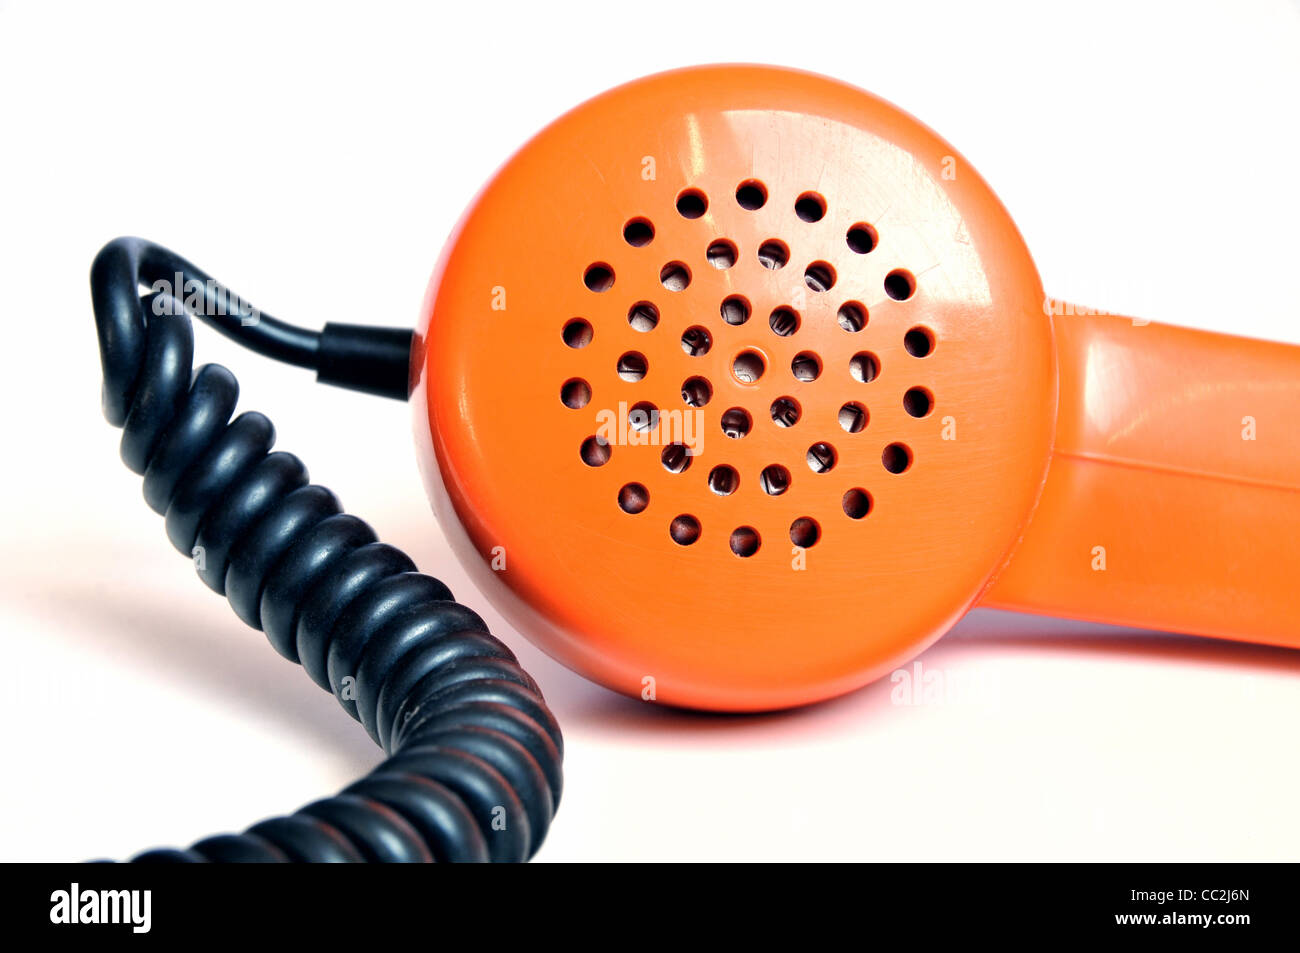 Old fashioned retro de couleur orange sur fond blanc téléphone Banque D'Images